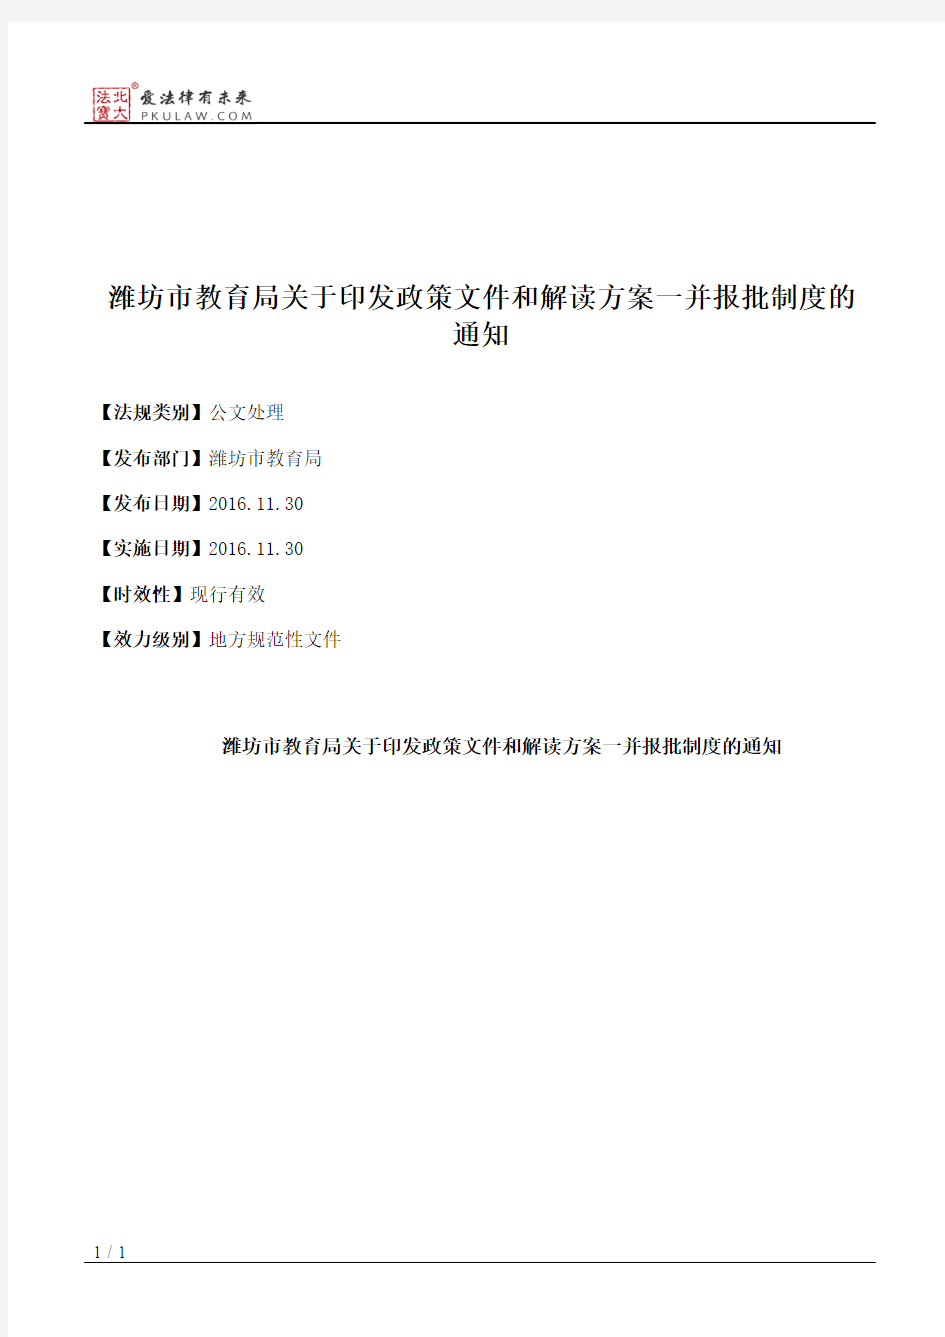 潍坊市教育局关于印发政策文件和解读方案一并报批制度的通知